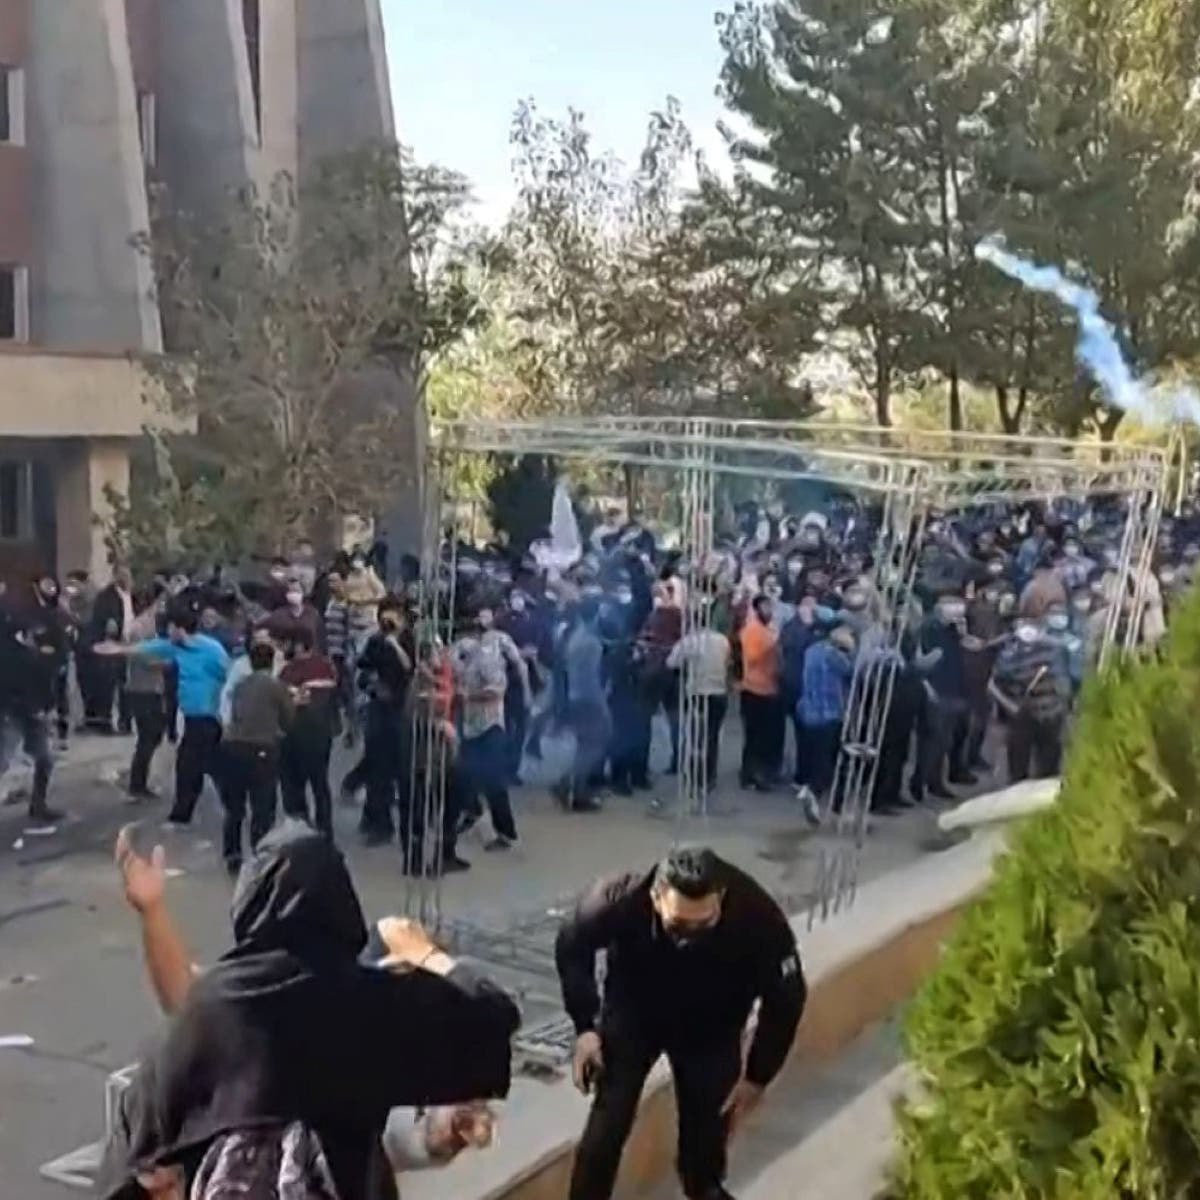 انطلقت احتجاجات في أصفهان (وسط إيران) حيث هتف المتظاهرون "الموت للديكتاتور خامنئي"